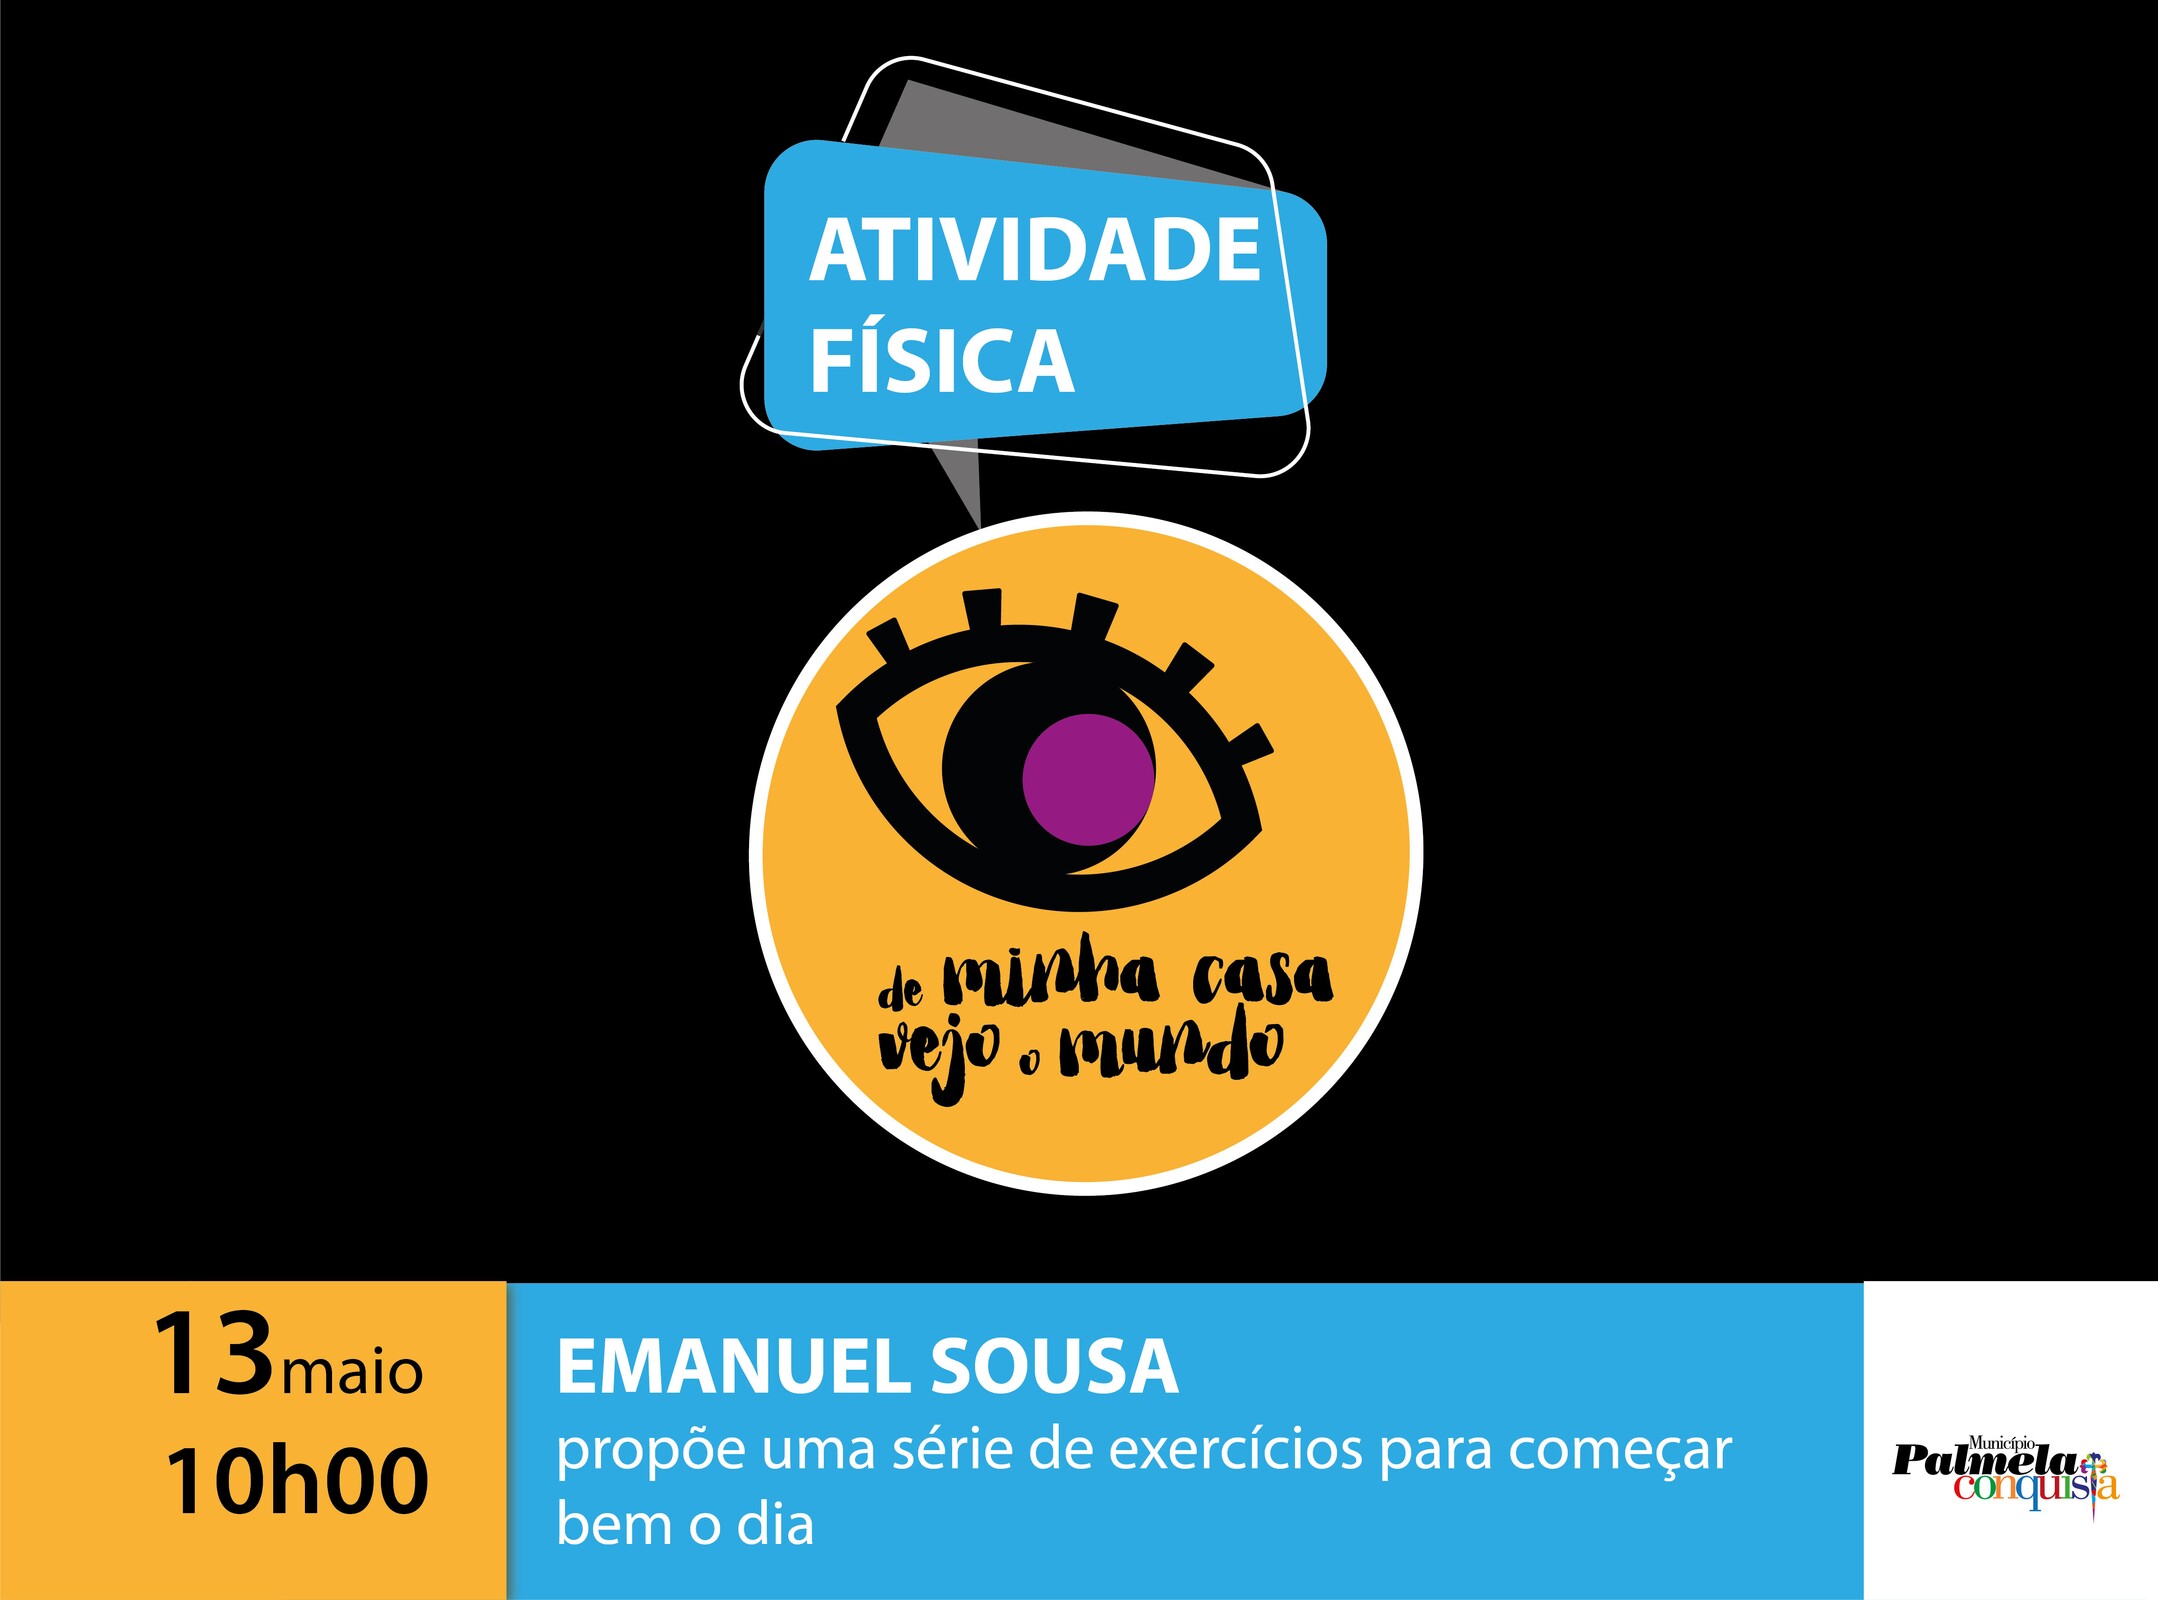 “De minha casa vejo o mundo”: Emanuel Sousa regressa com novo treino!